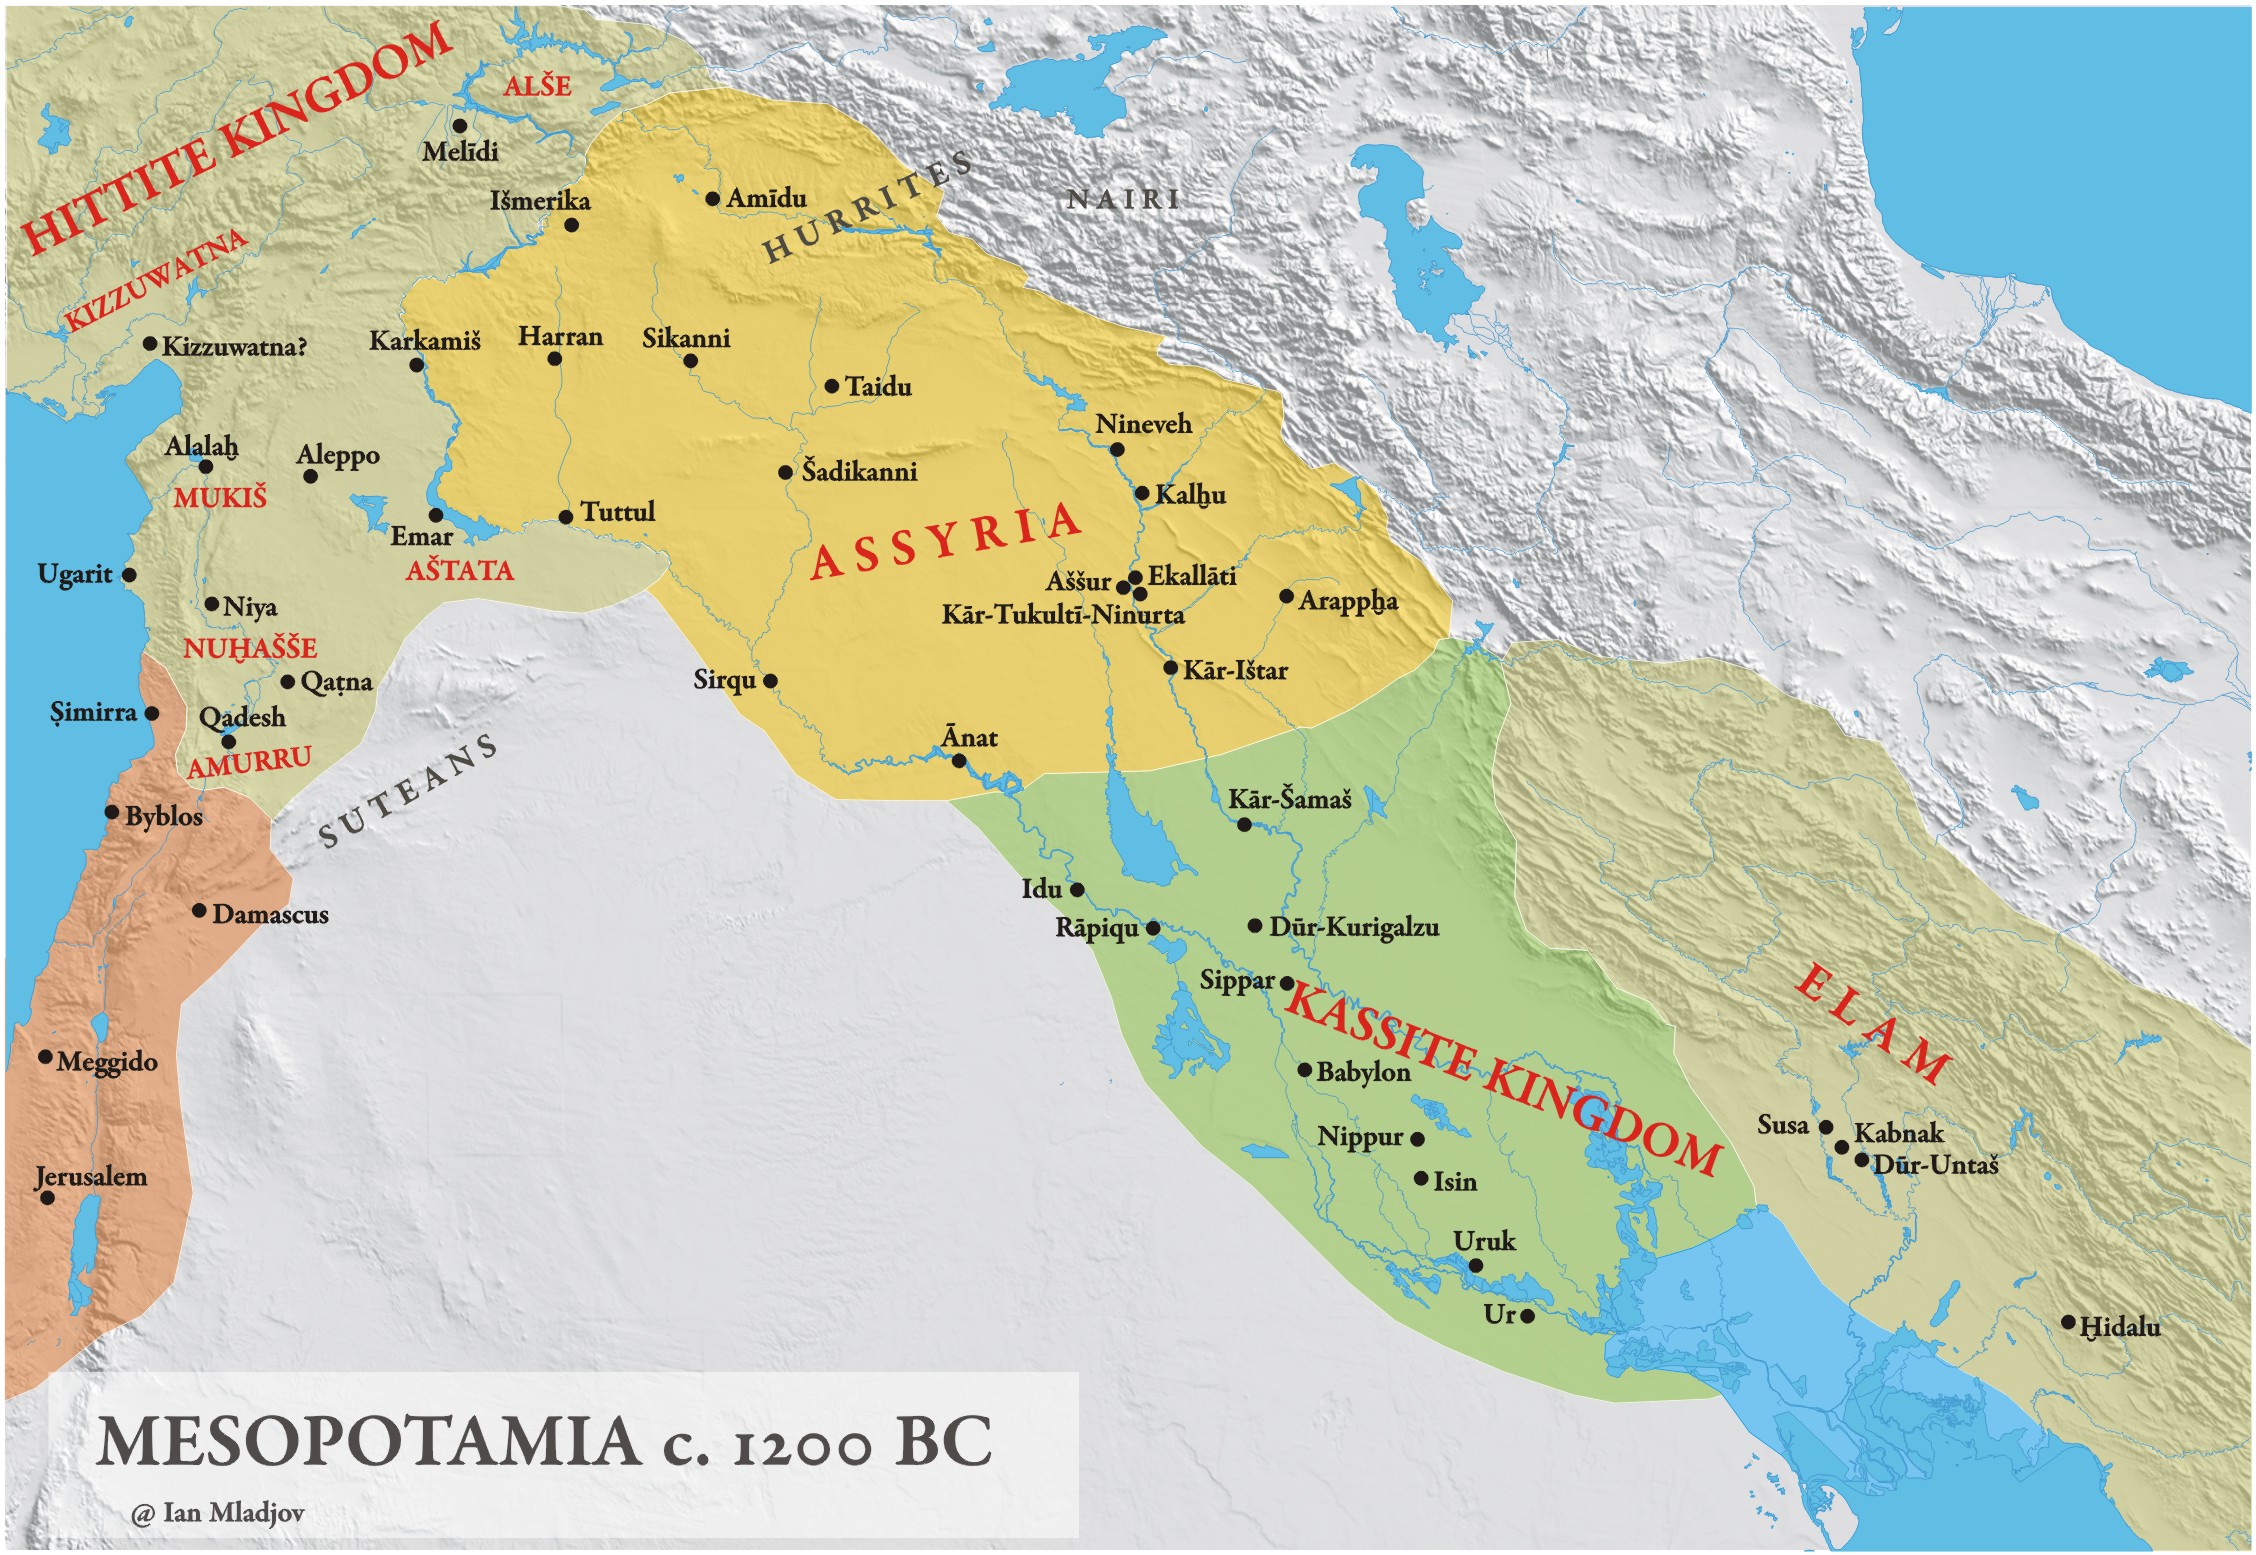 Mesopotamia1200 